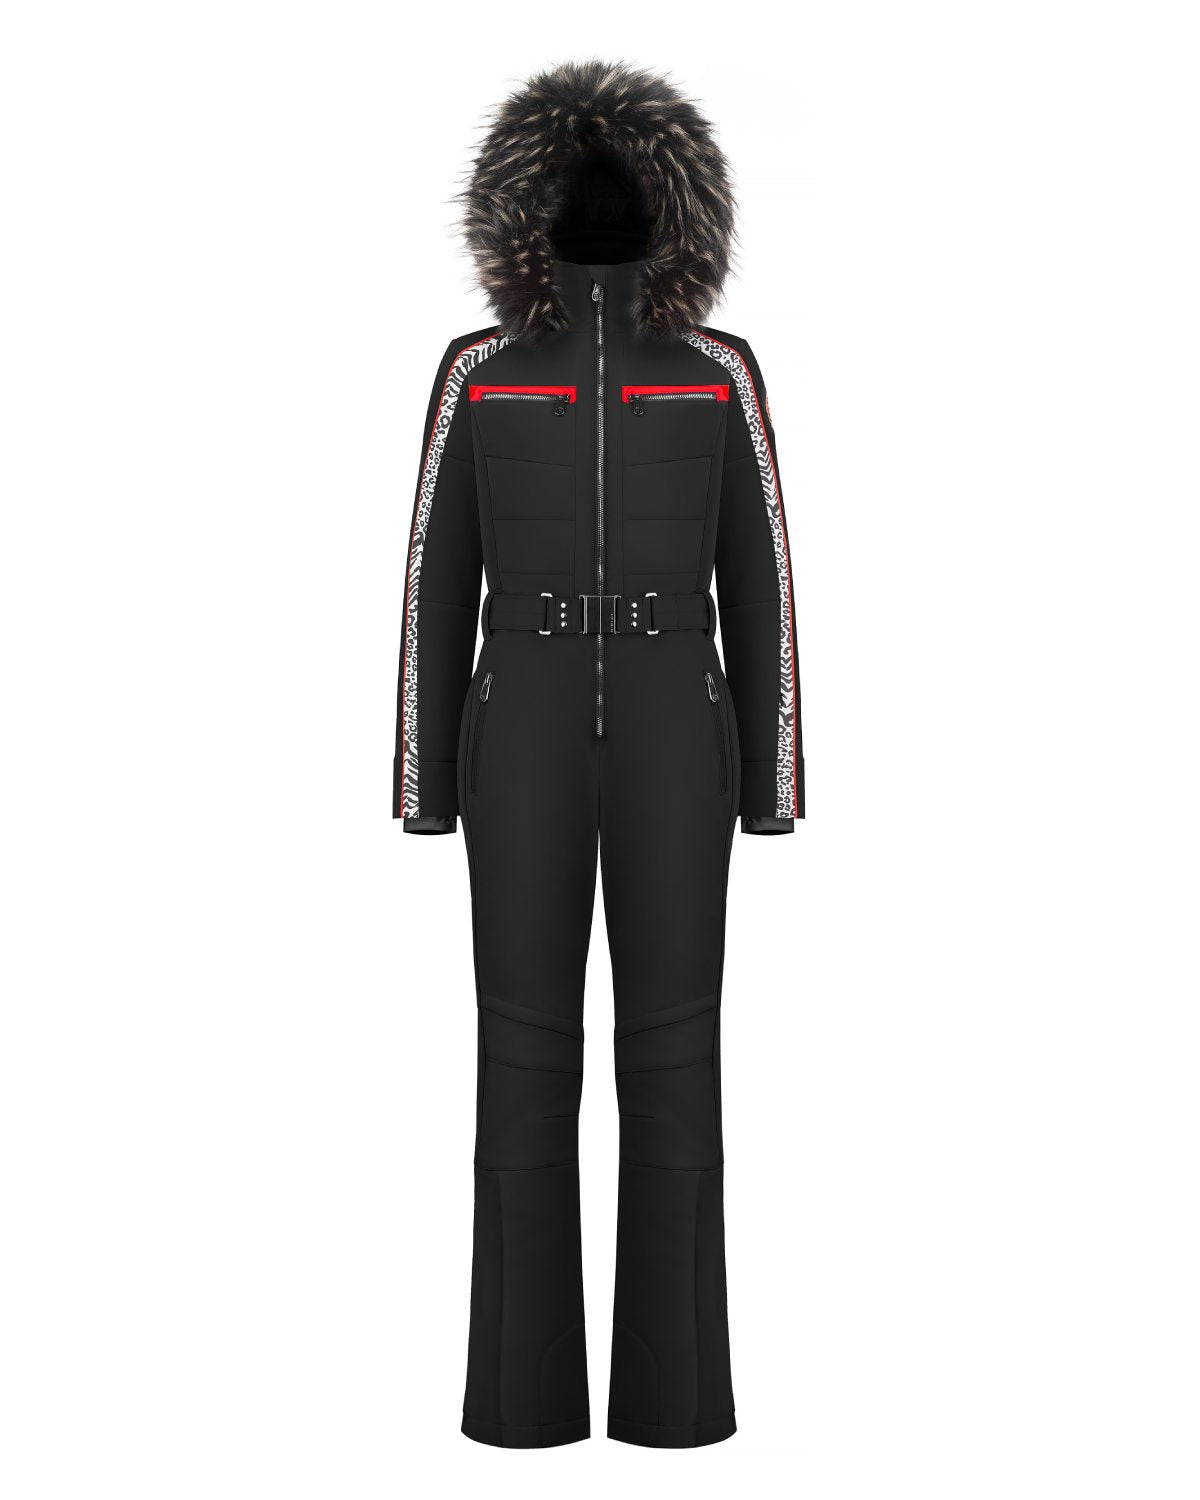 Poivre Blanc Women's Zebra Stretch Ski Suit